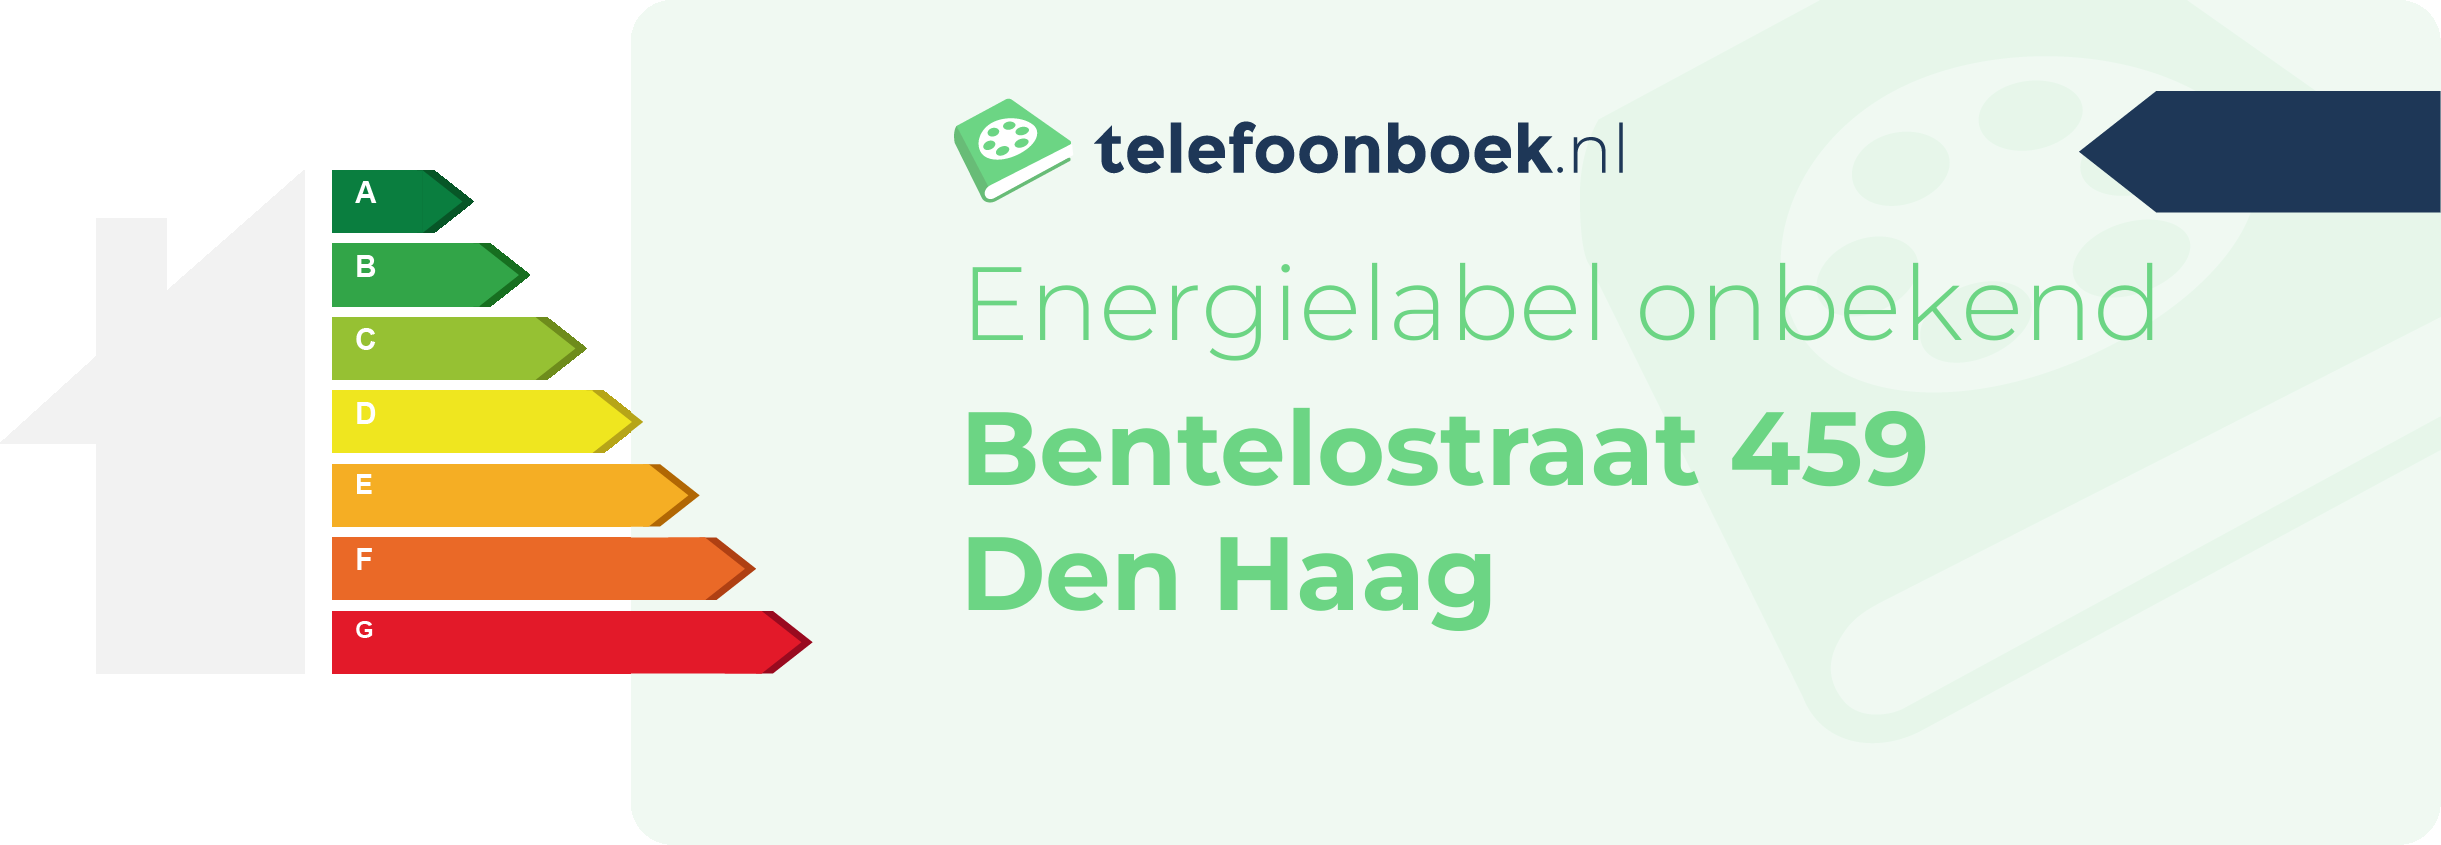 Energielabel Bentelostraat 459 Den Haag